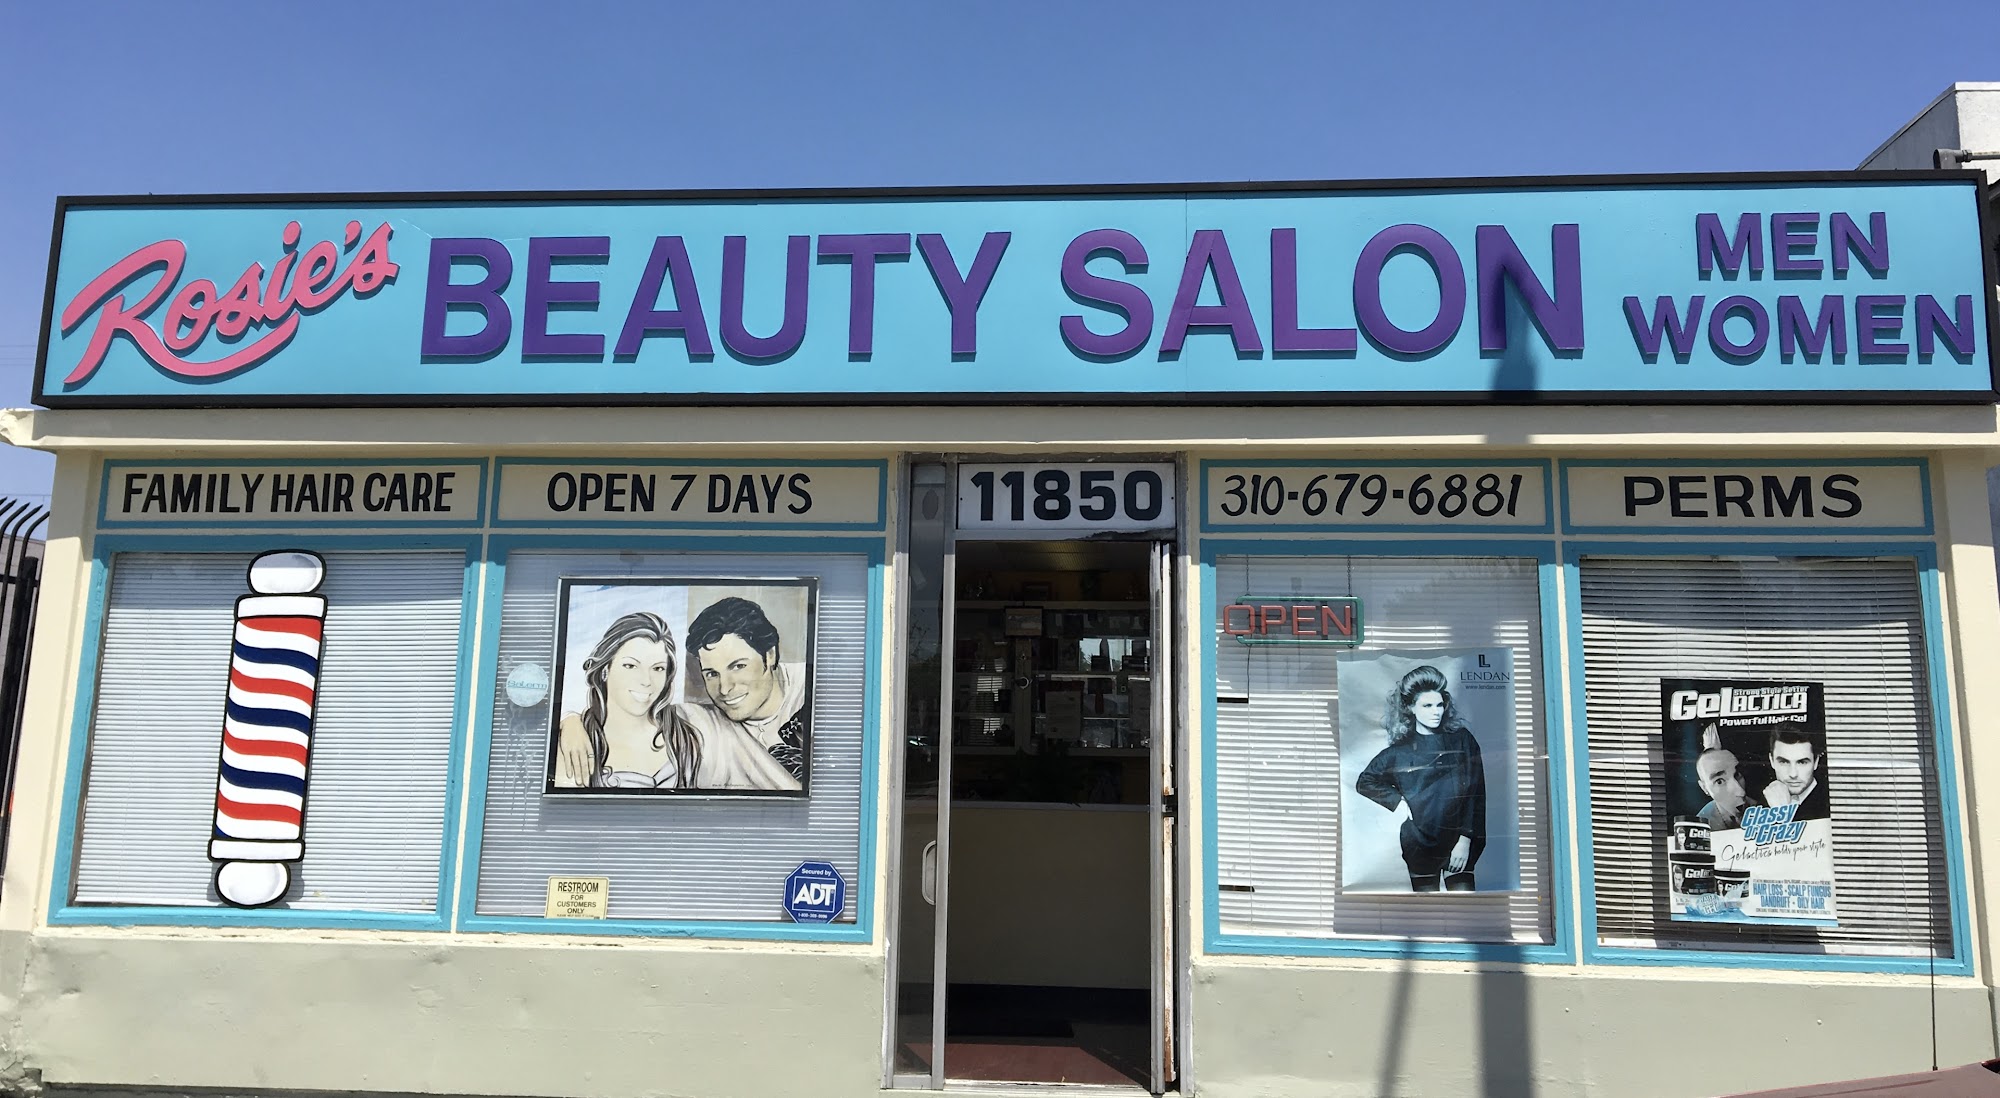 Rosie's Beauty Salon